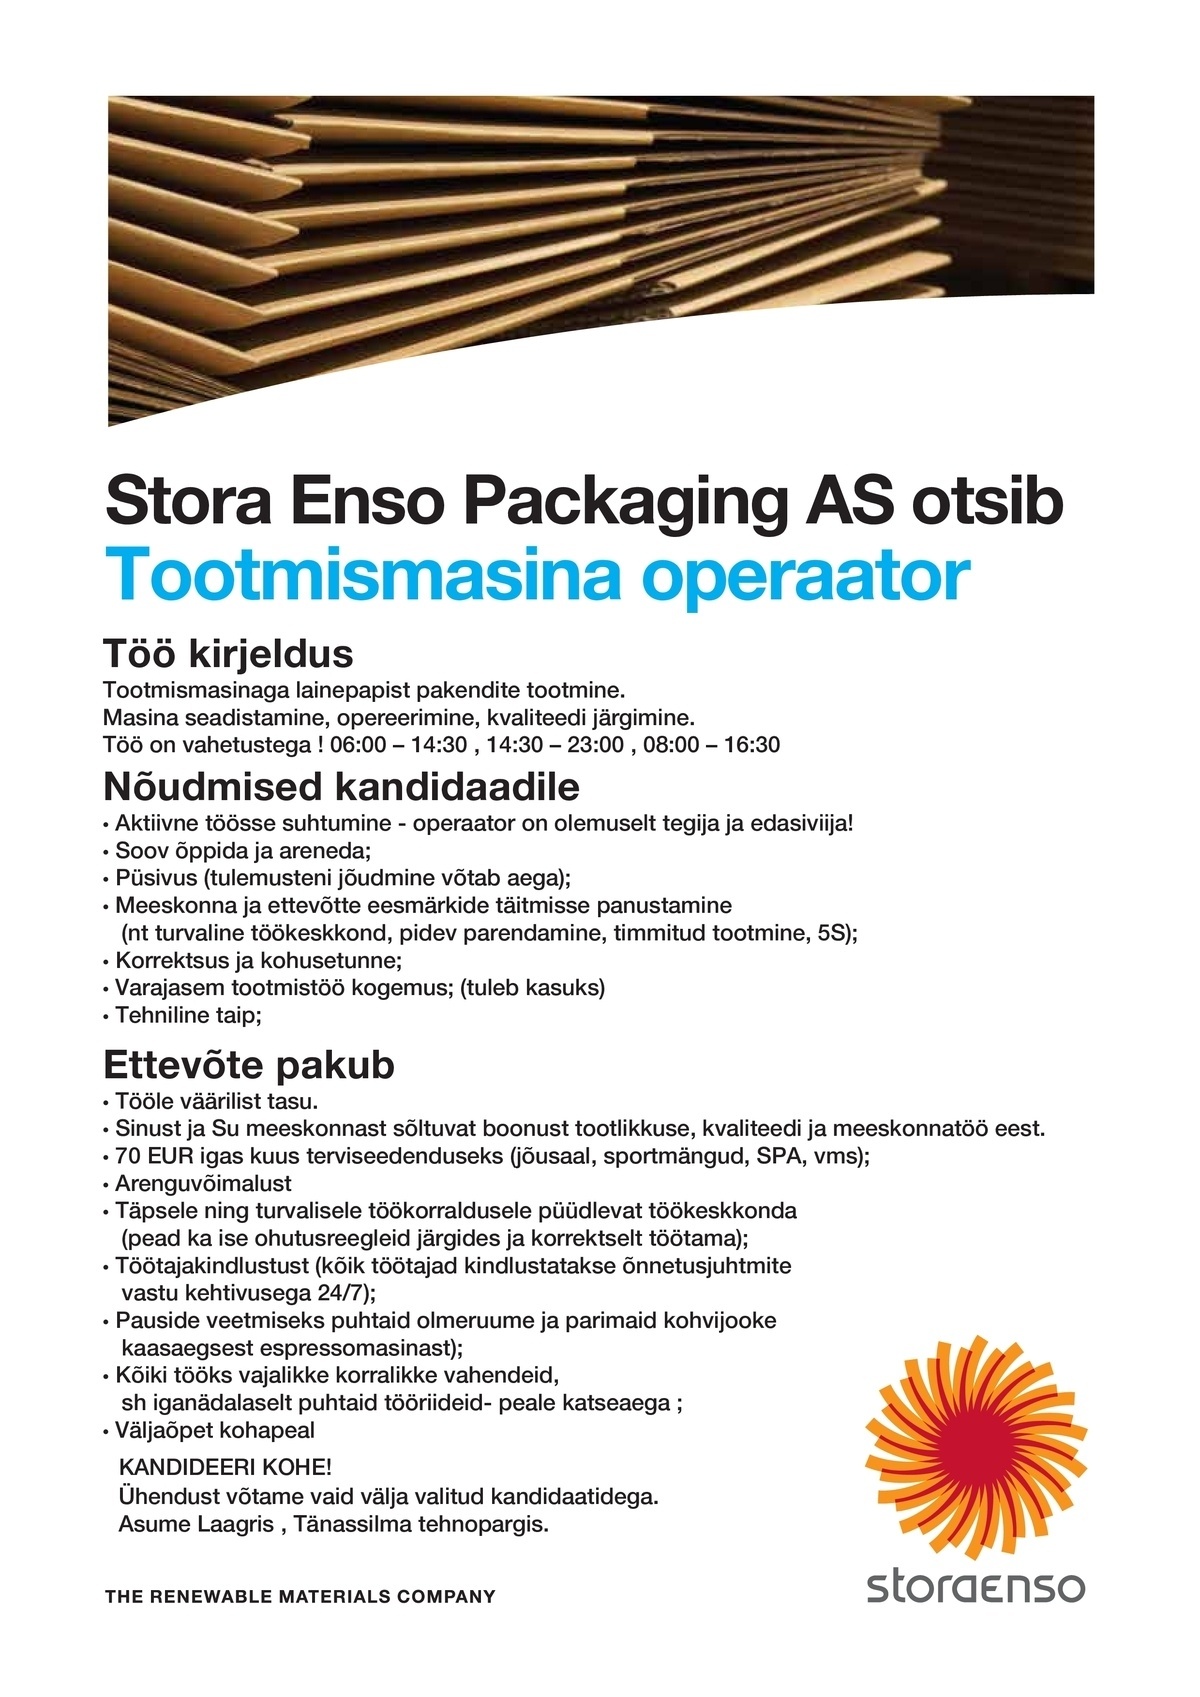 Stora Enso Packaging AS Tootmismasina operaator